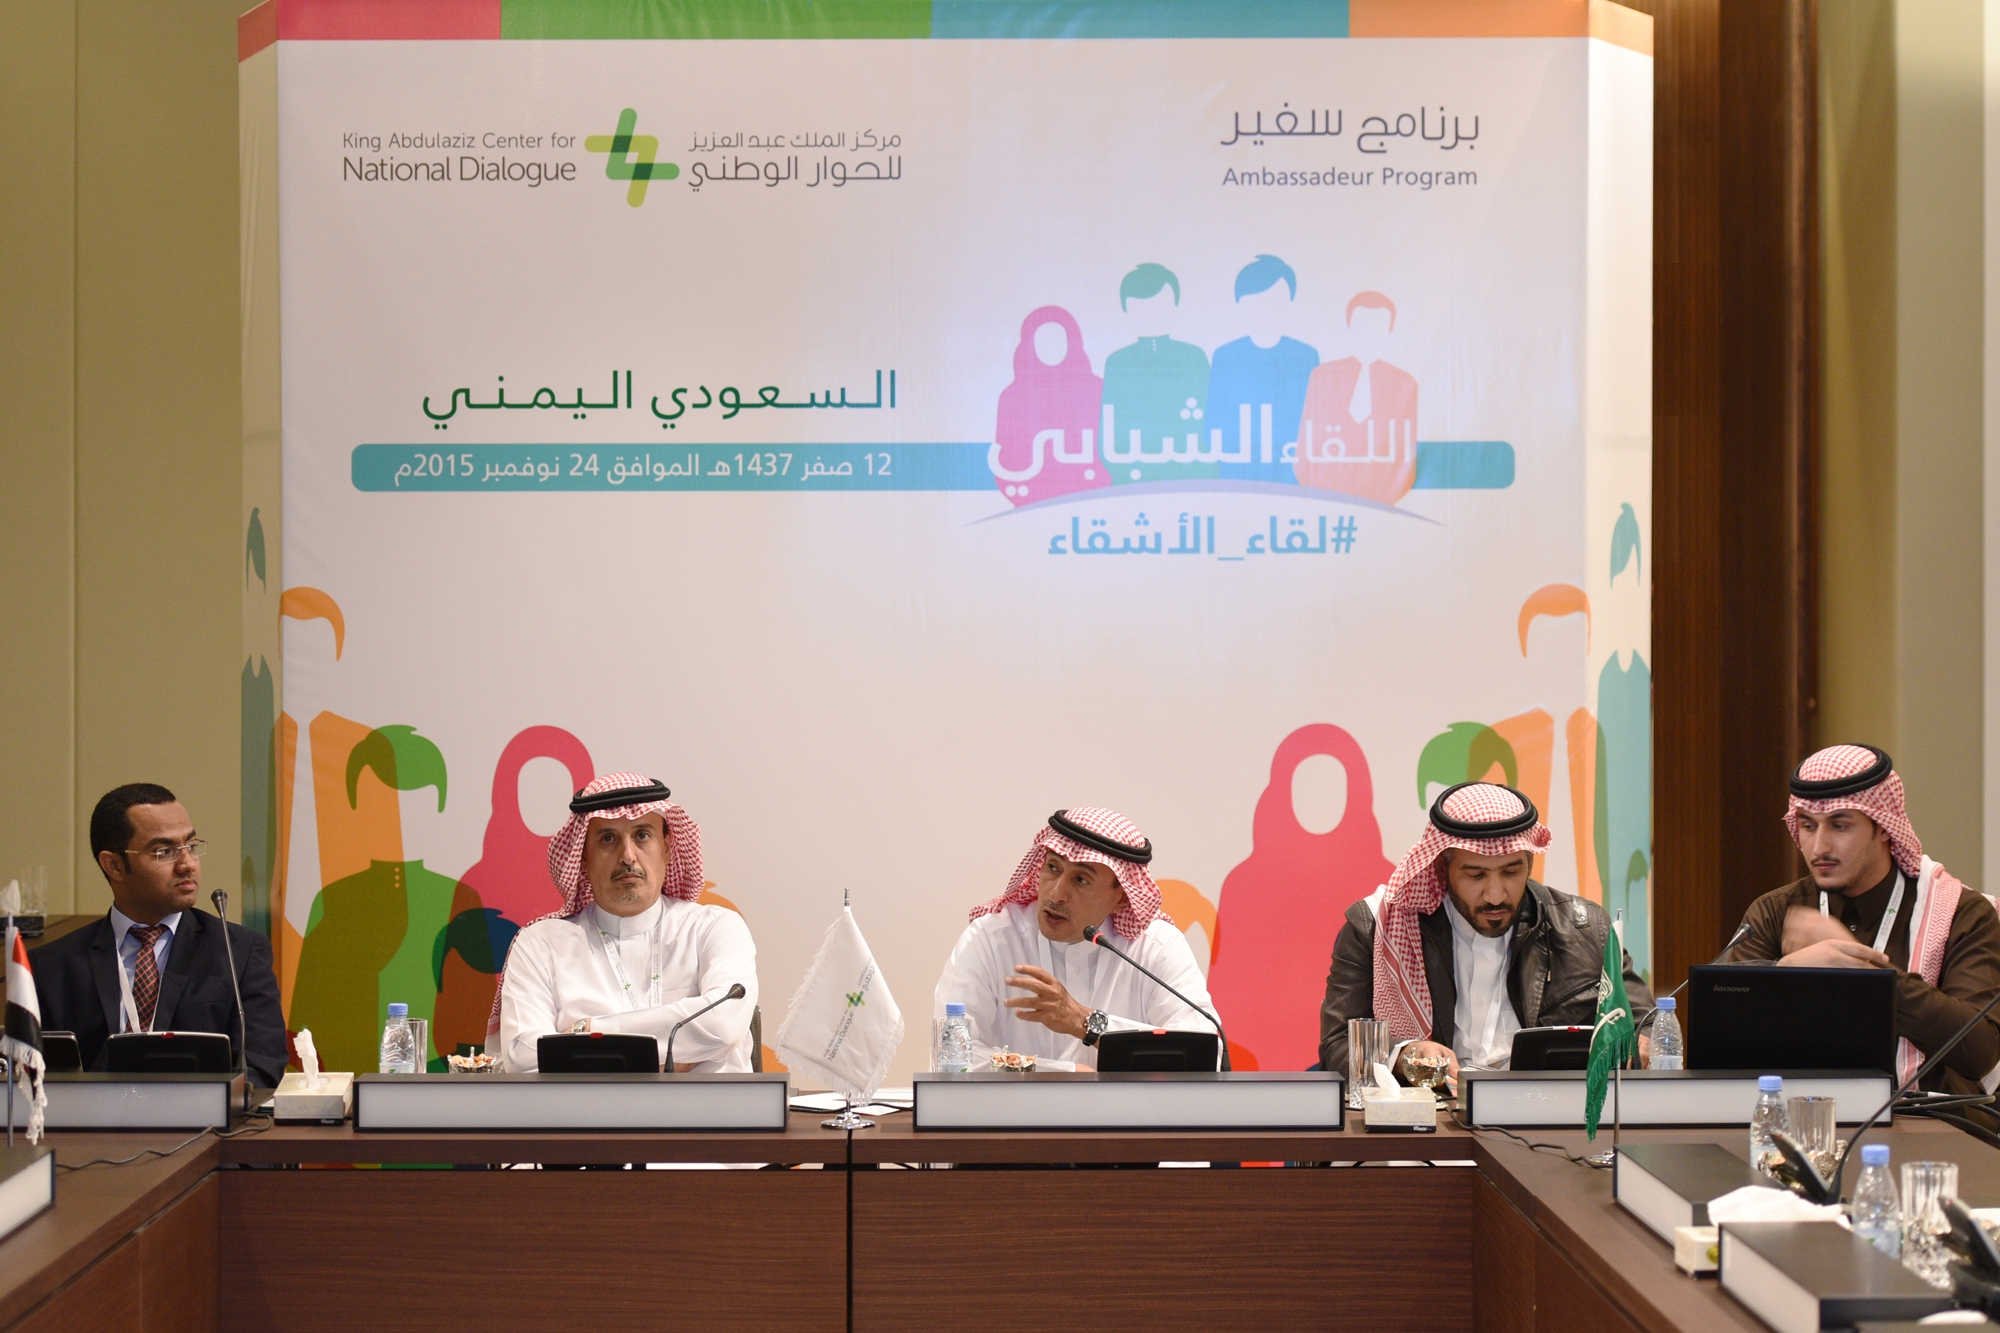 “لقاء الأشقاء” لتعزيز روابط التبادل الثقافي والحضاري بين الشباب السعودي واليمني